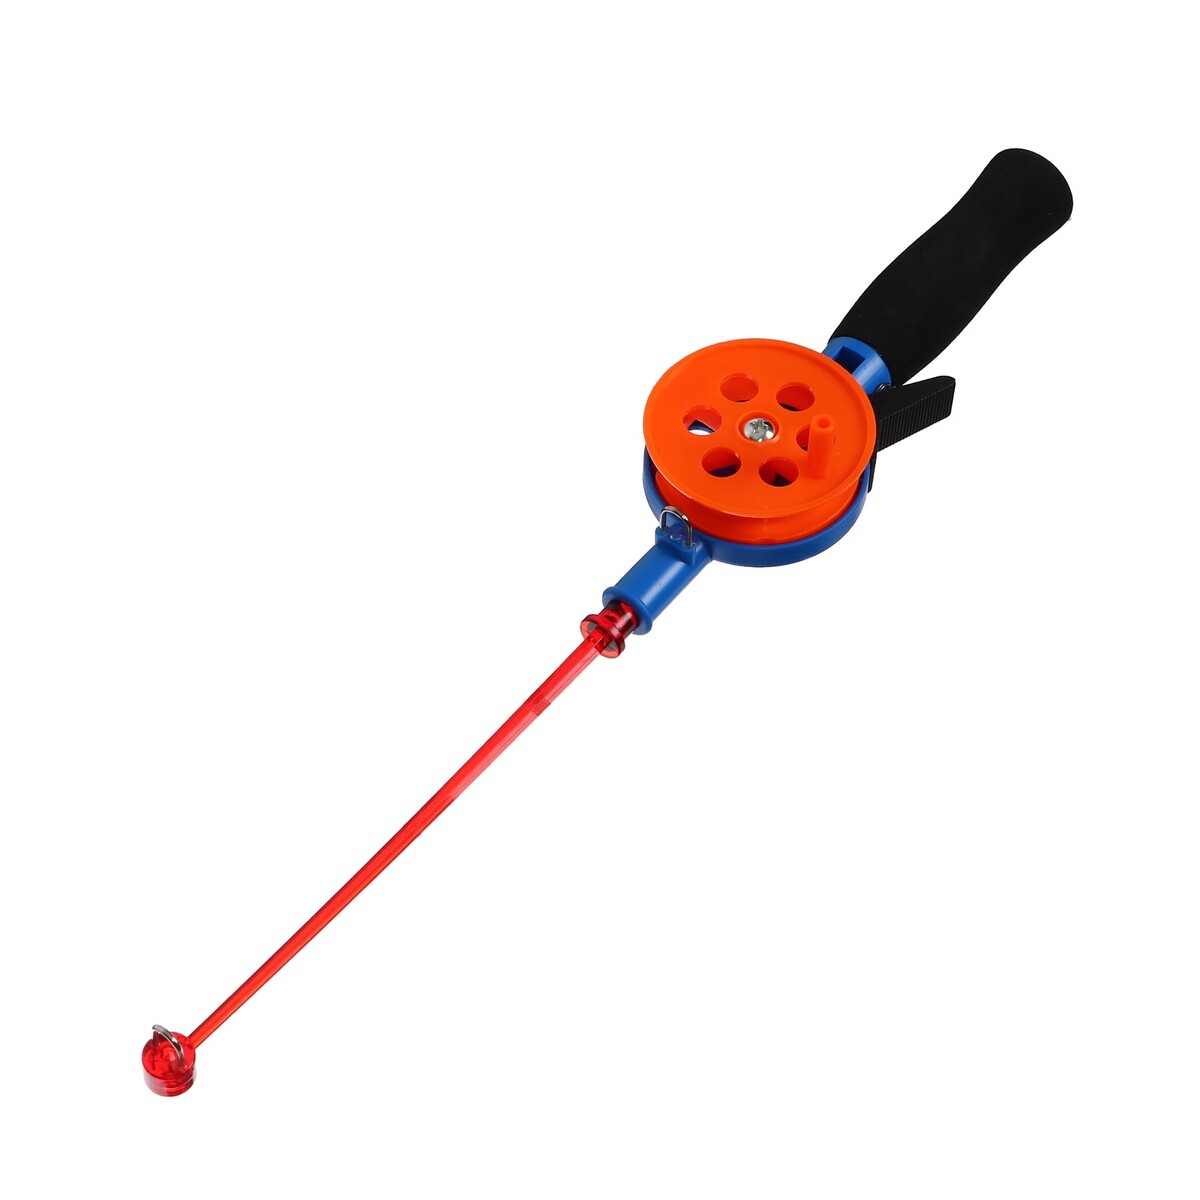 Удочка зимняя, ручка неопрен, длина 33 см, цвет оранжевый, hfb-34